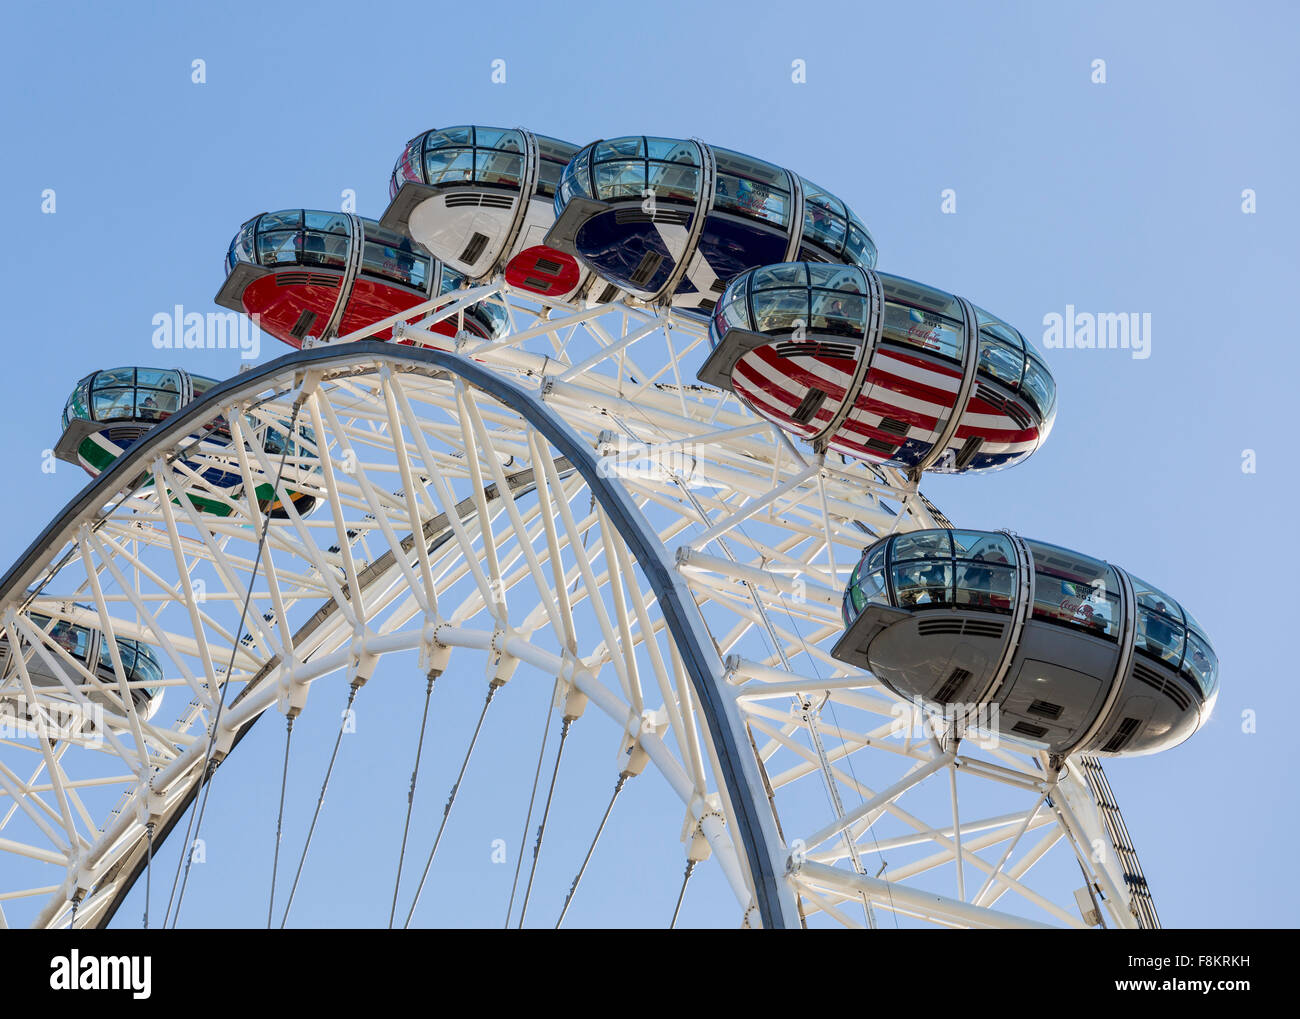 Capsules on the London Eye, London, England, UK Stock Photo